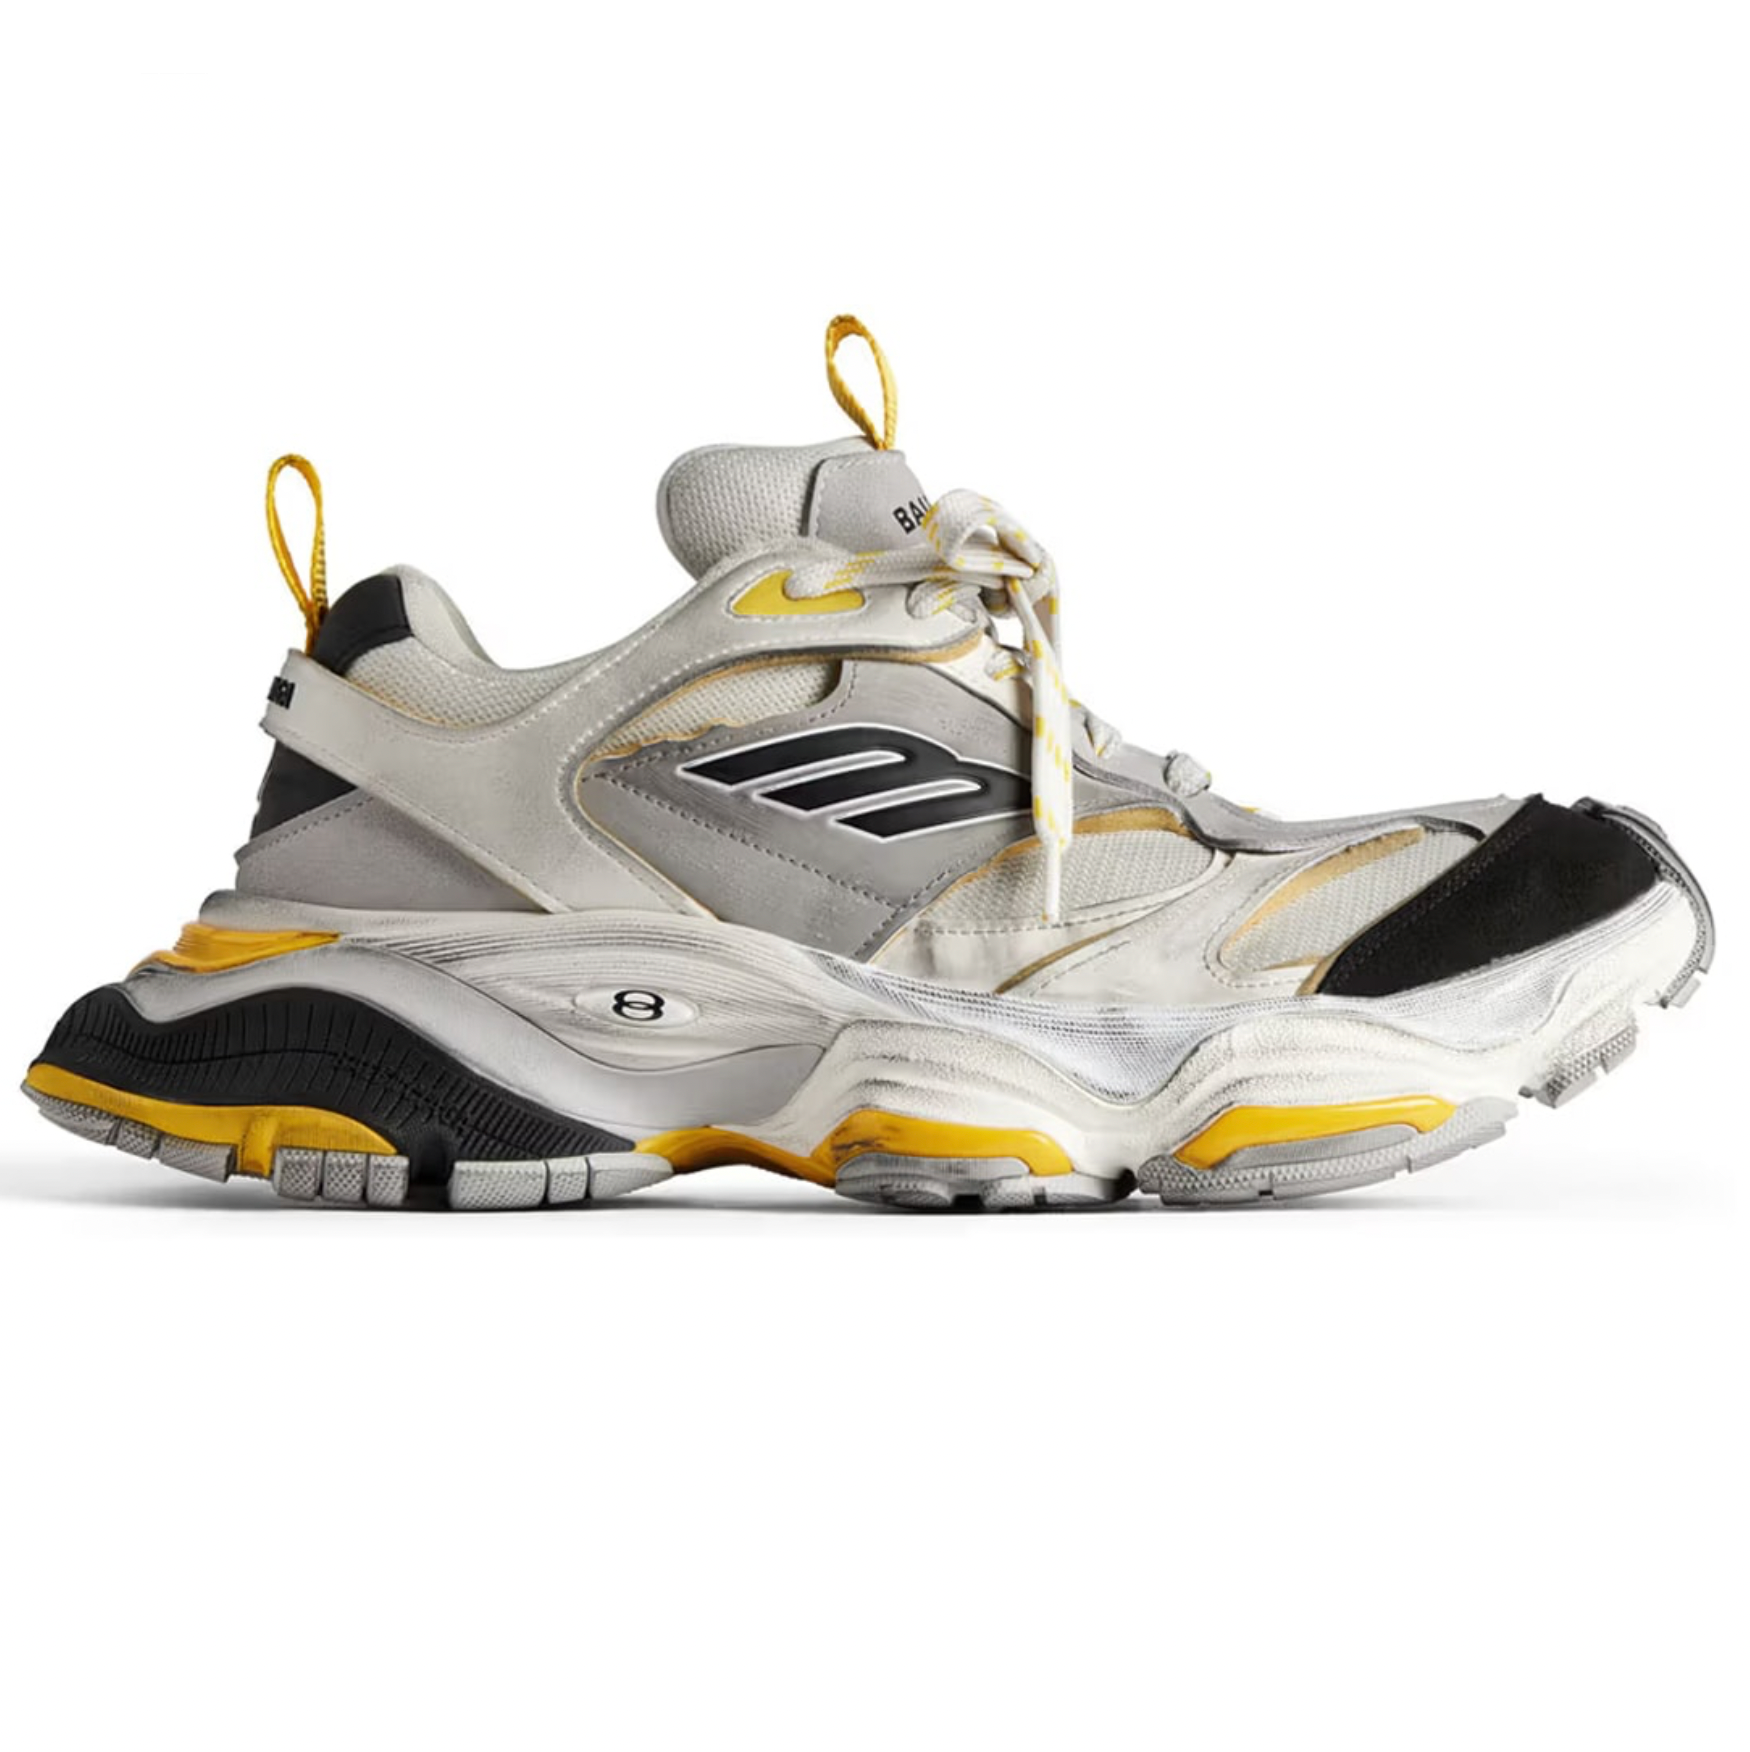 Balenciaga Cargo Sneakers in Grey/ White/ Yellow | Designer Sneakers Women EU39 / Grey/ White/ Yellow